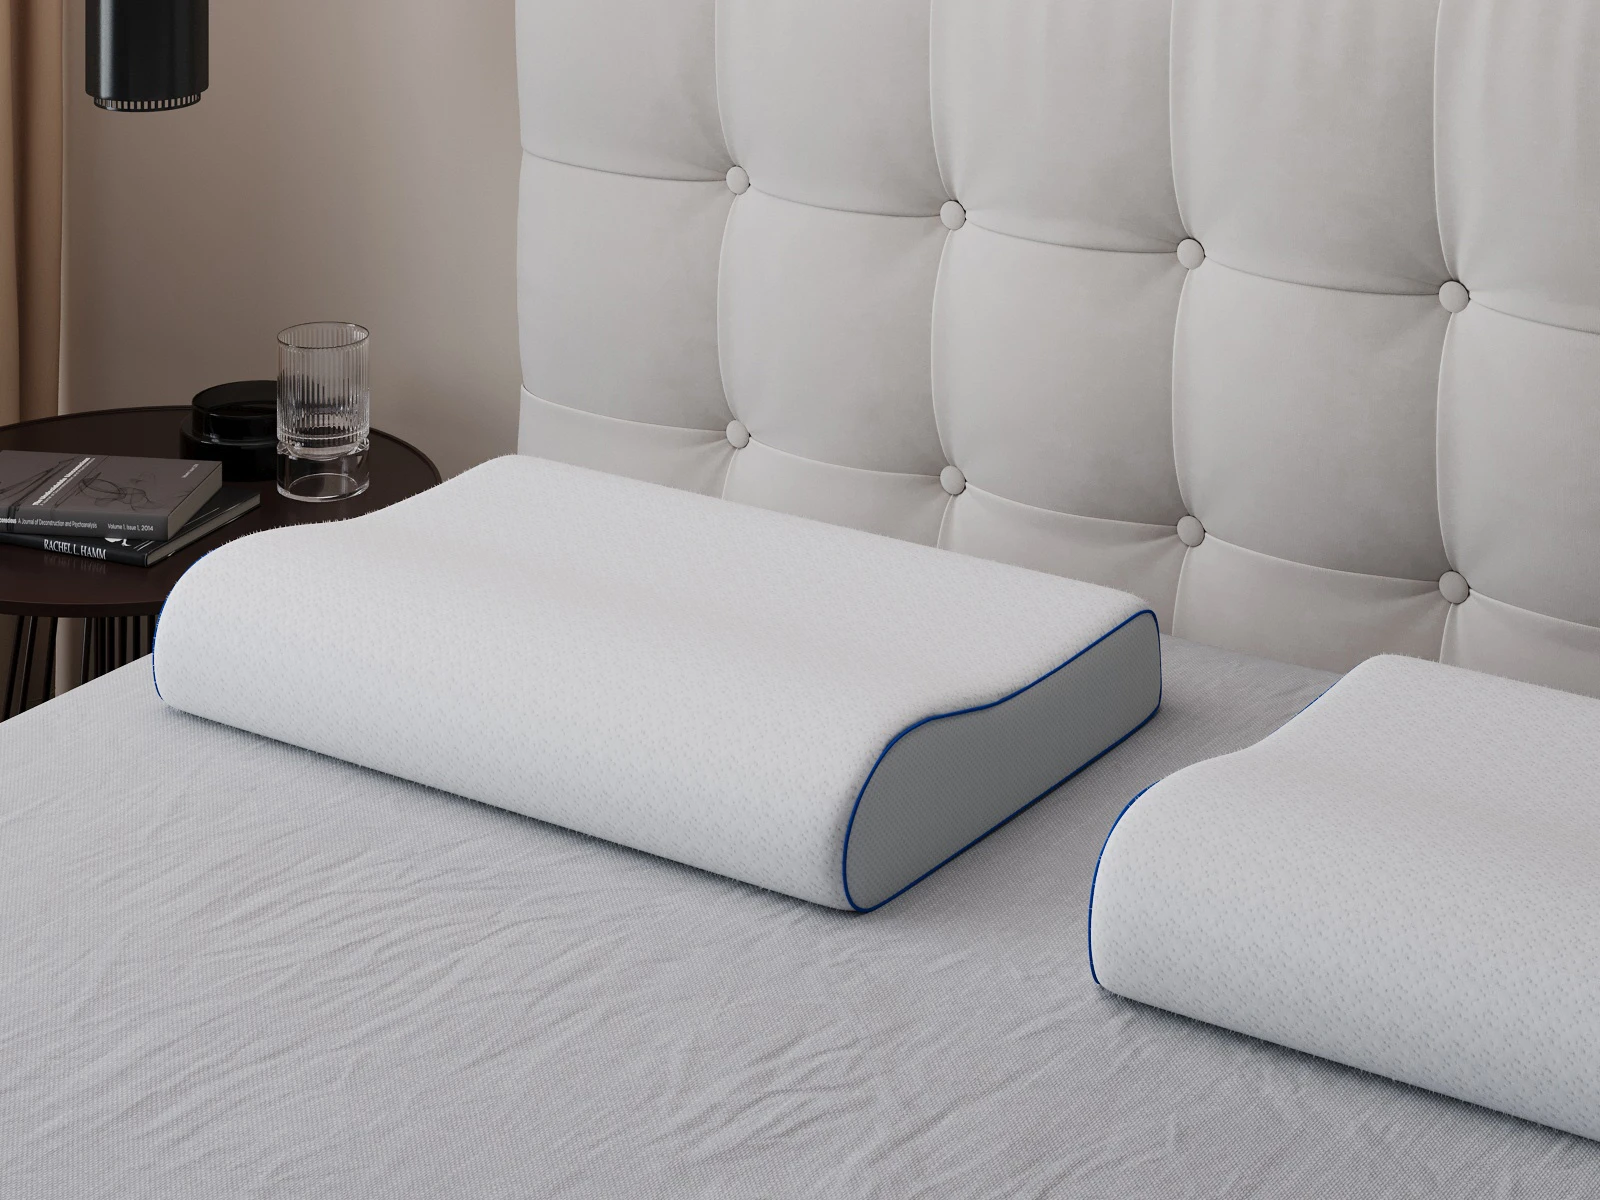 1 Memory Foam Neck Support Pillow 60x40x10 cm